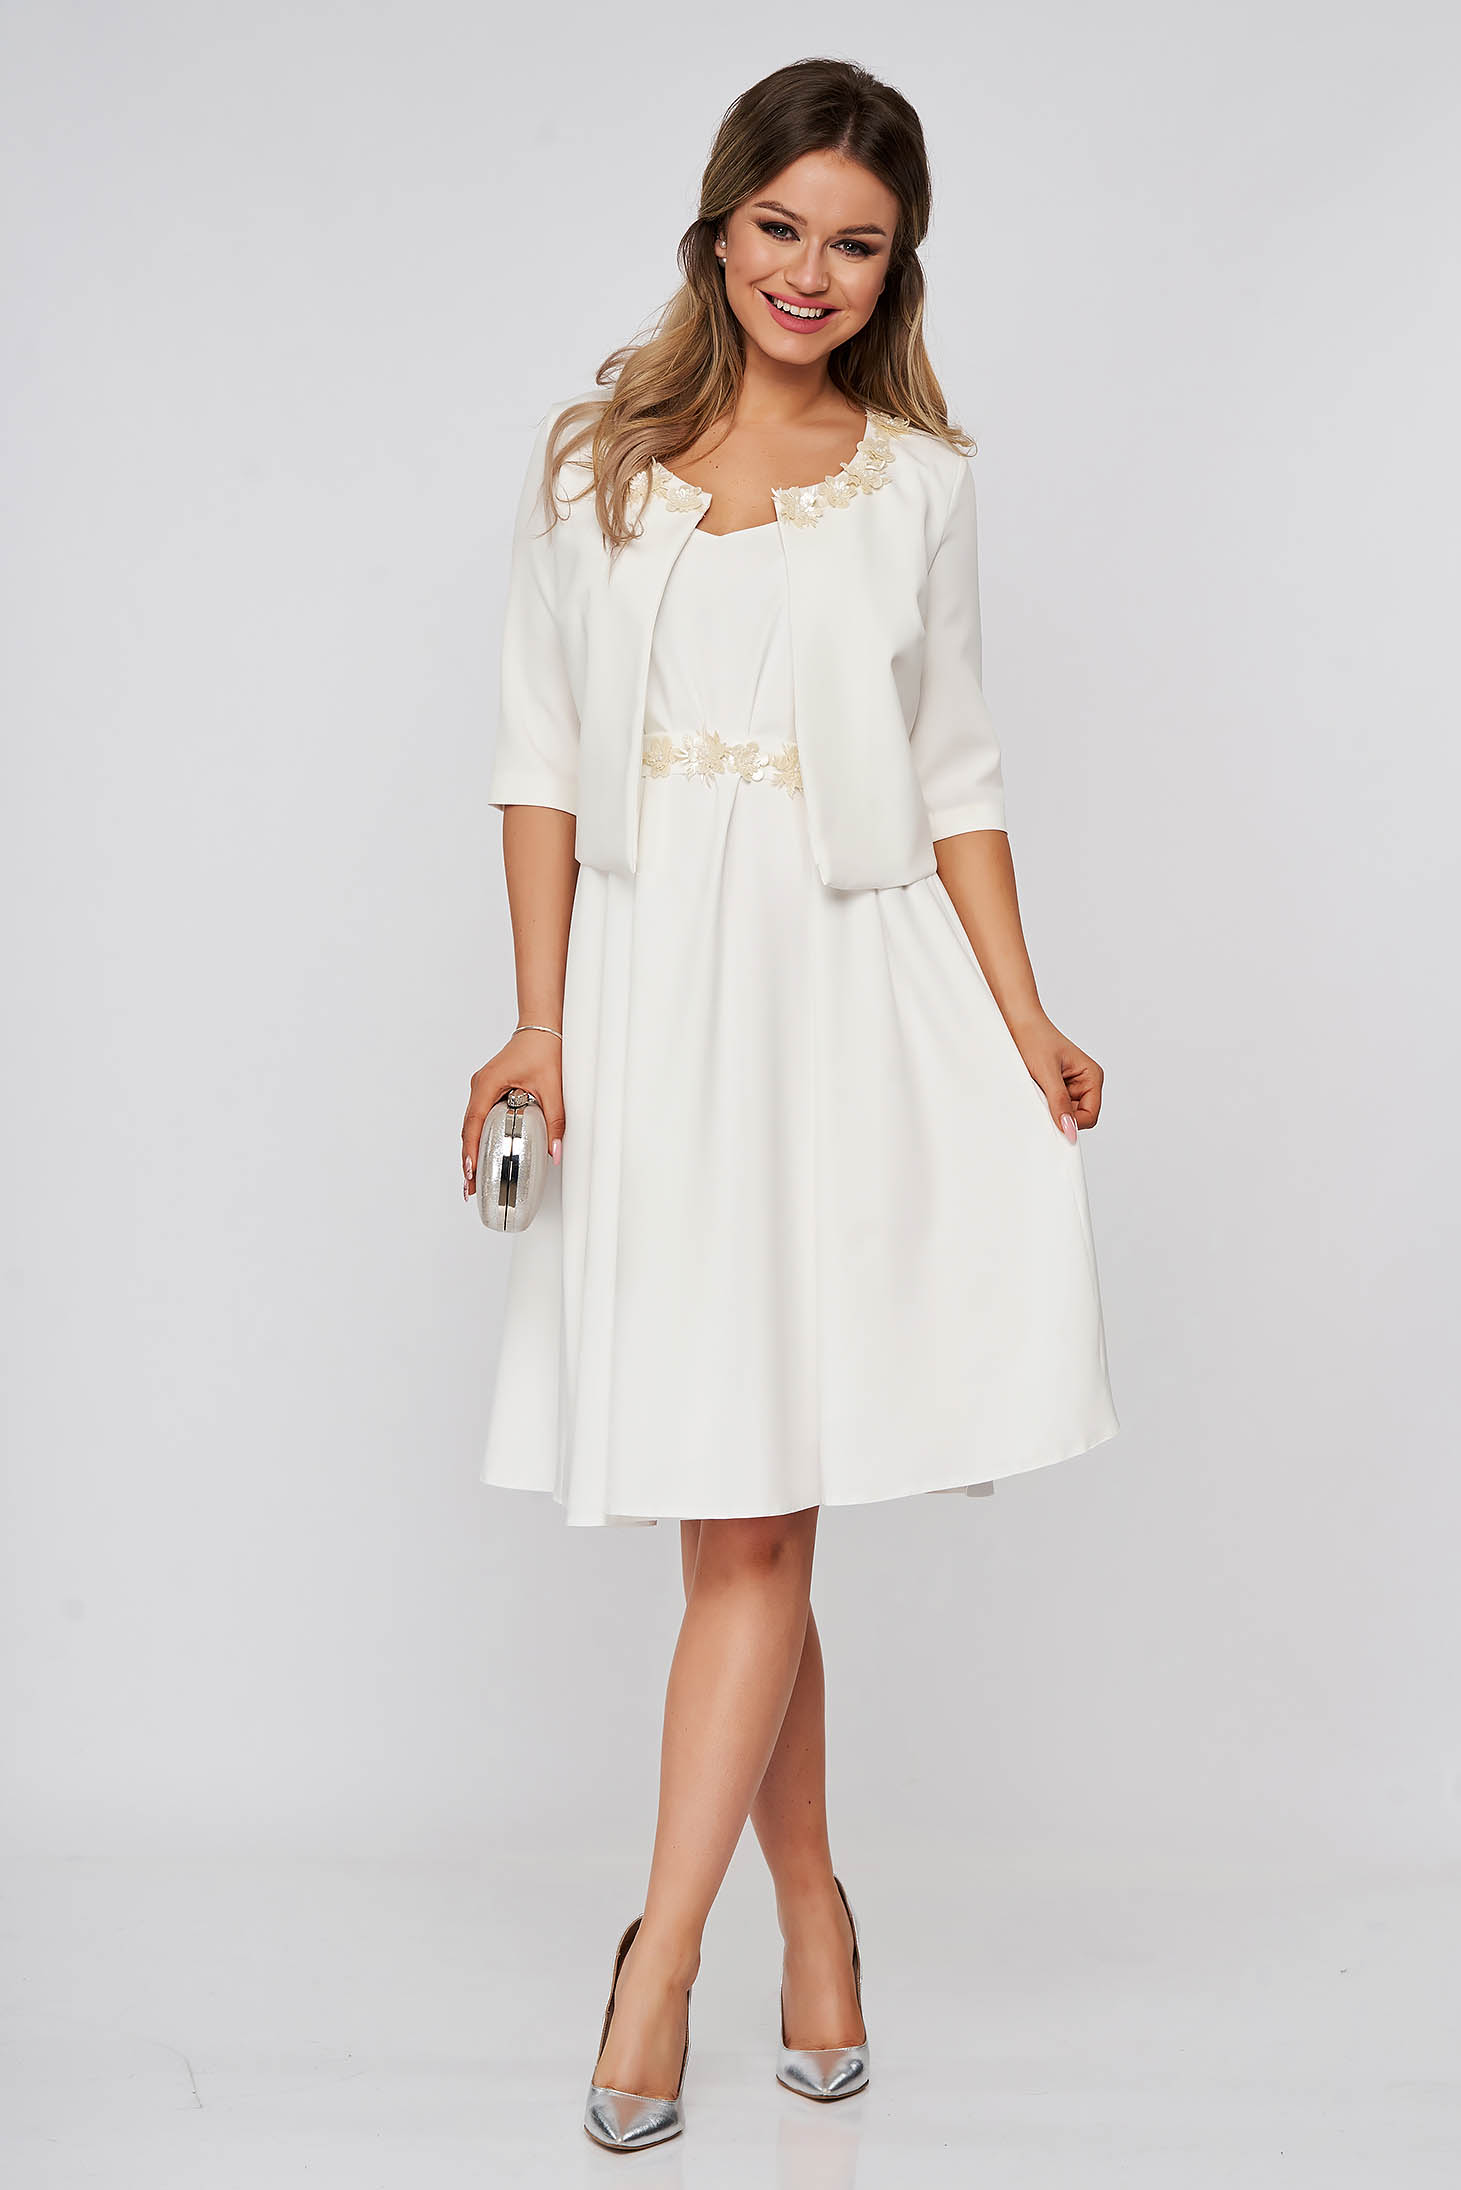 Fehér StarShinerS szövet női kosztüm ruhával rugalmas anyagból 3d virágos díszítéssel